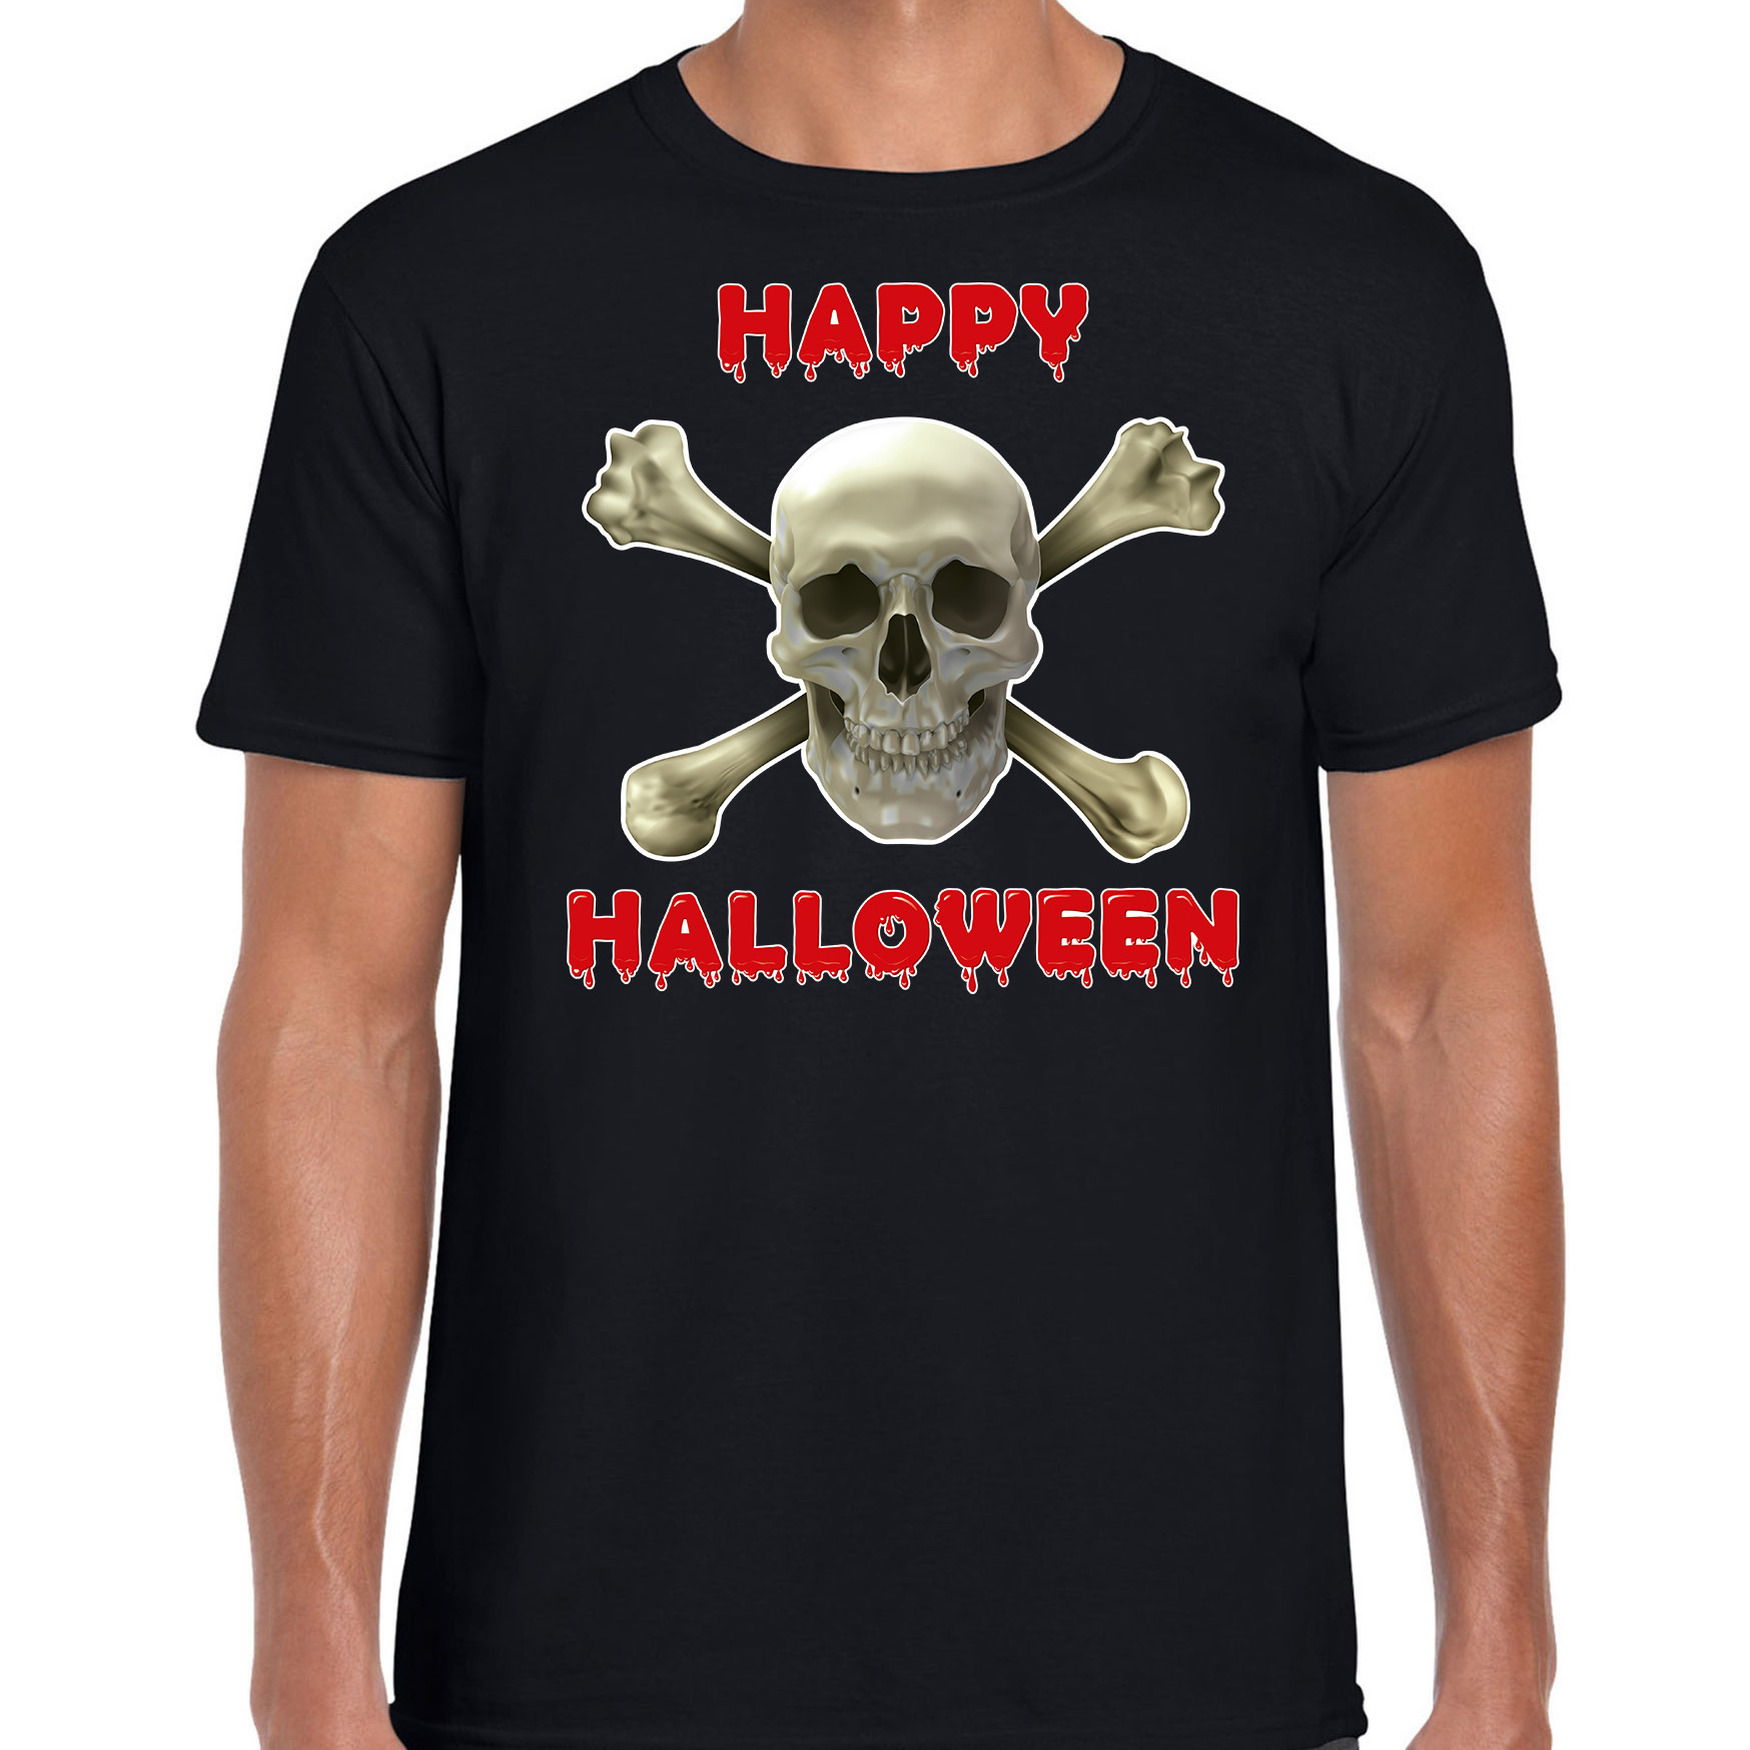 Halloween - Happy Halloween horror schedel verkleed t-shirt zwart voor heren